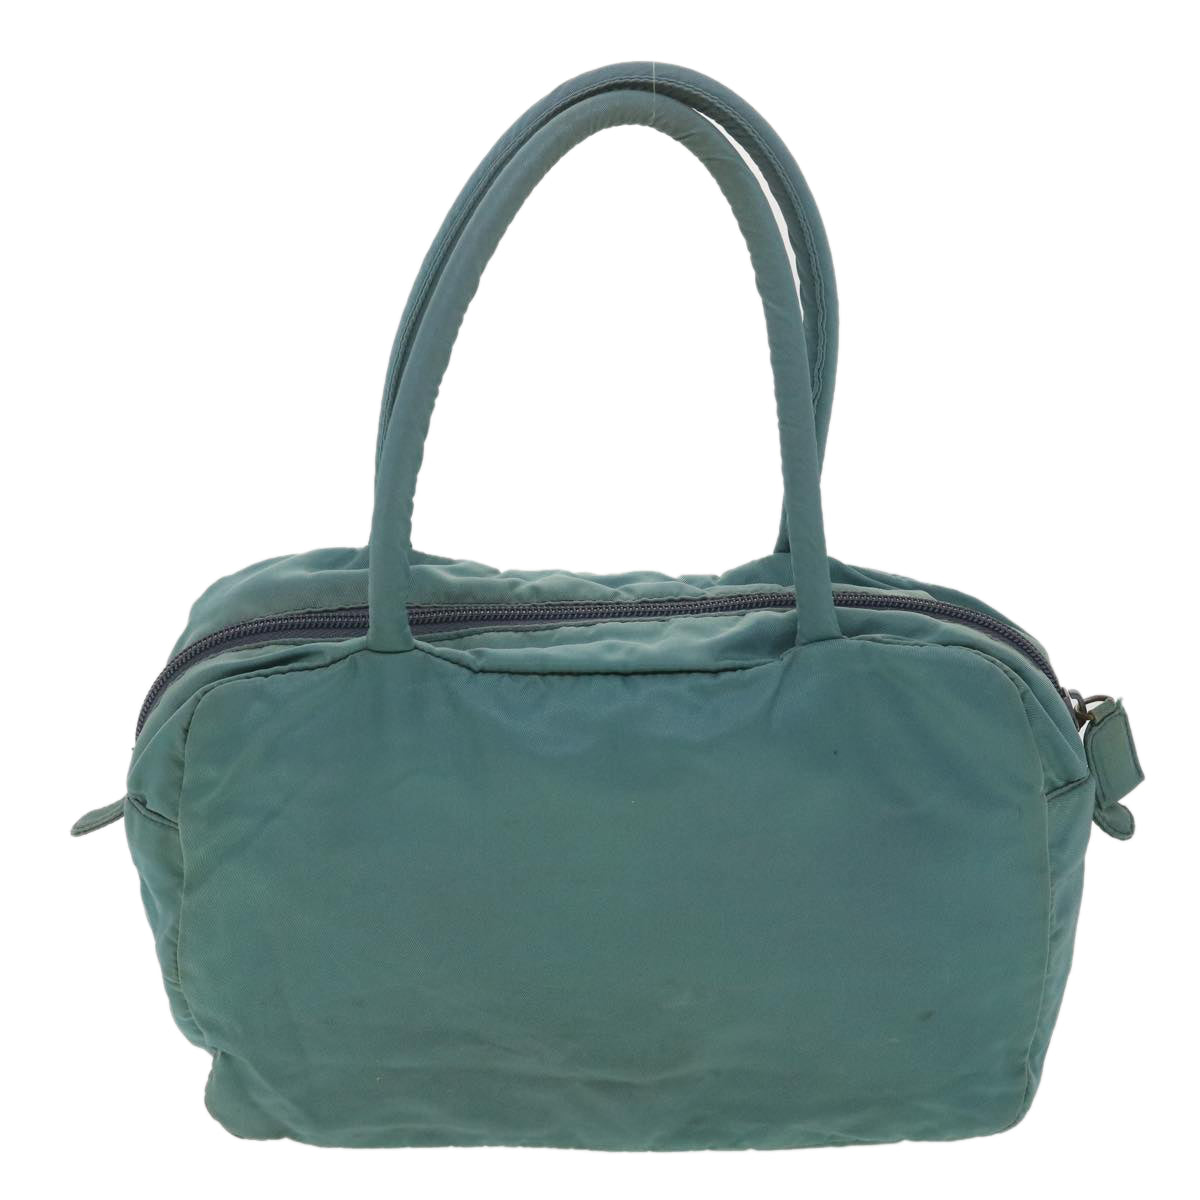 PRADA Hand Bag Nylon Light Blue Auth bs4581